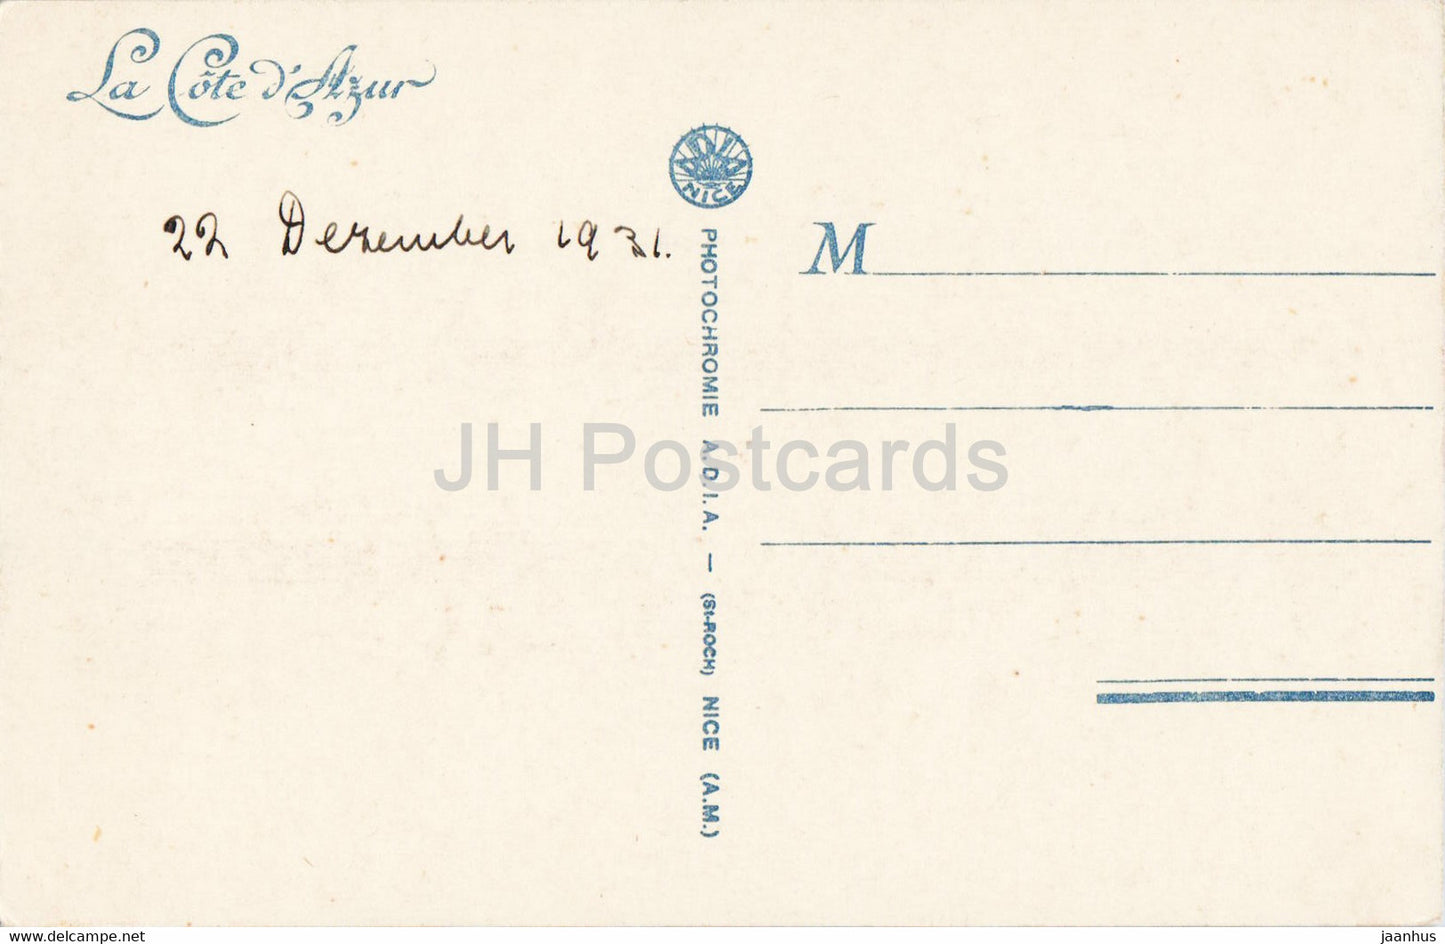 Beaulieu sur Mer - Vue Générale et le Cap Ferrat - 1 - carte postale ancienne - 1931 - France - occasion